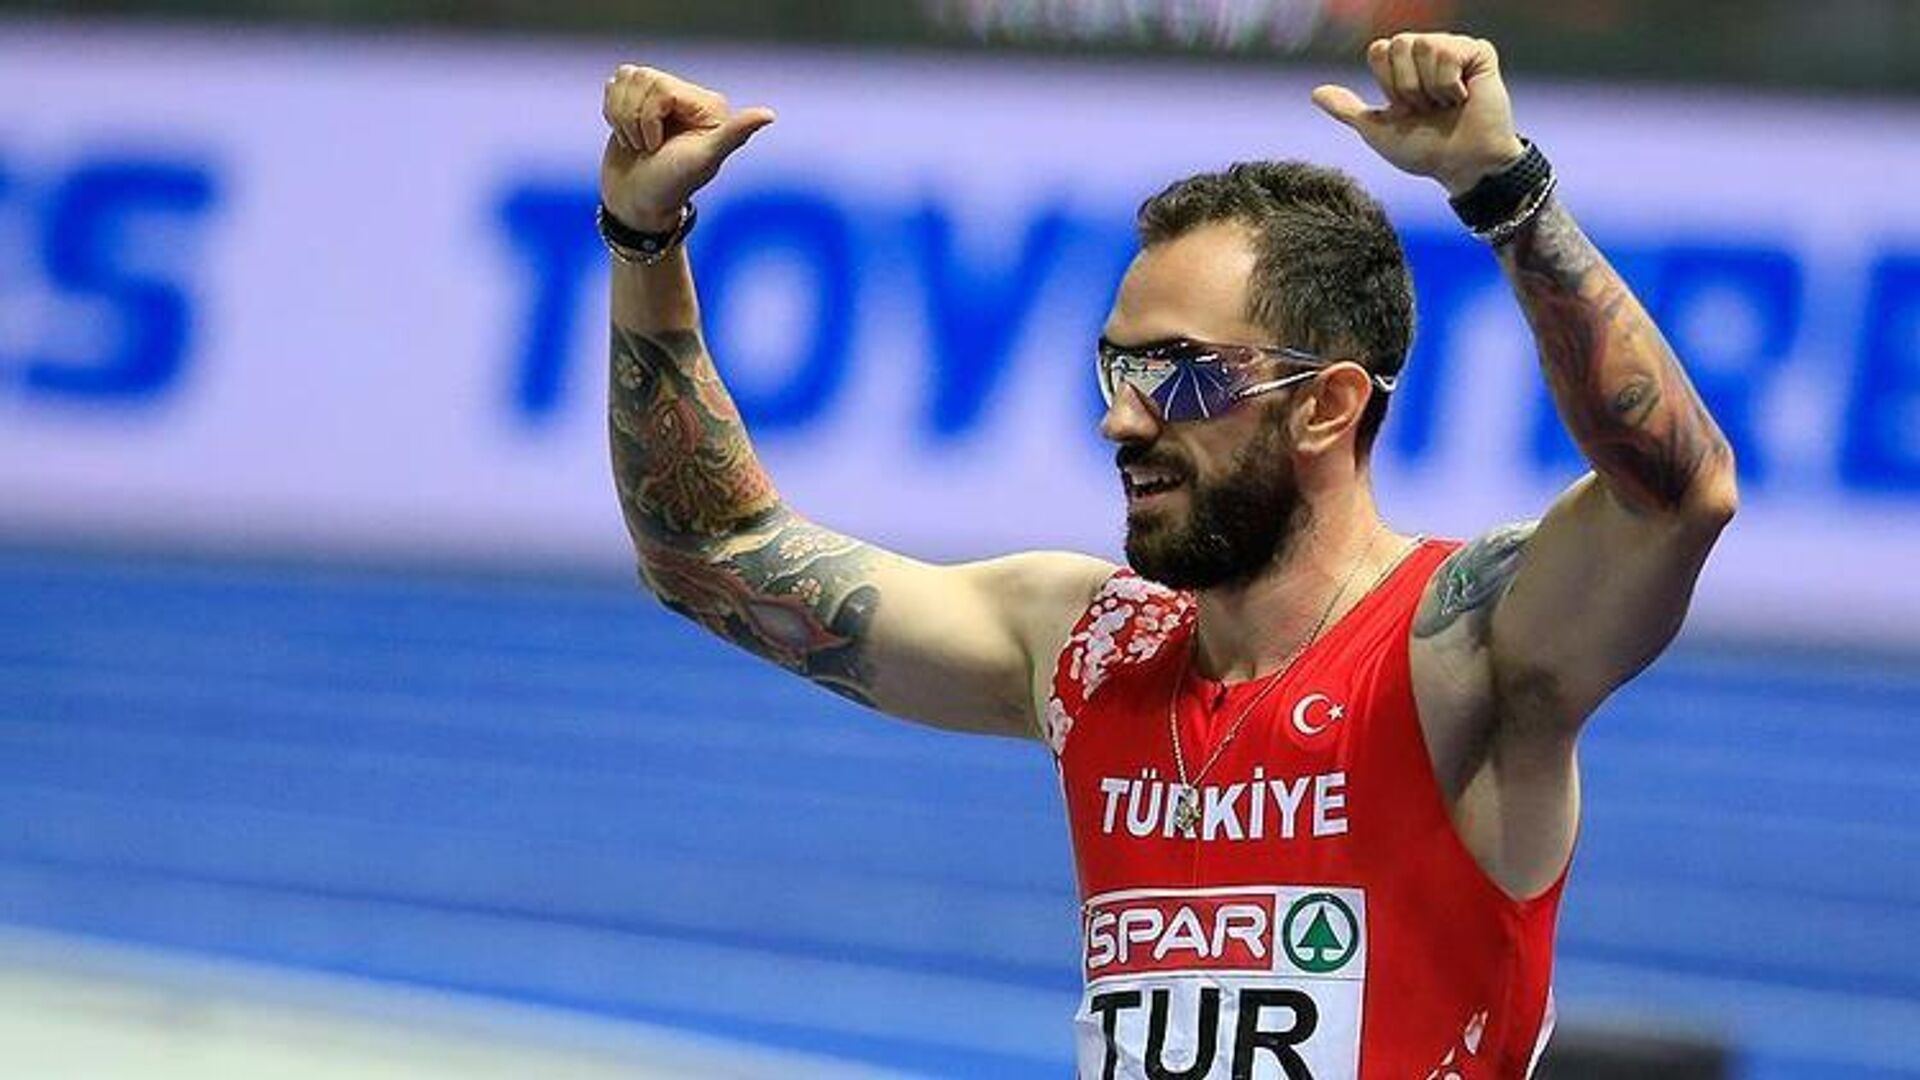 Londra'da 56 bin kişinin önünde çıktığı 200 metre erkekler yarışını 20.09'luk derecesiyle dünya şampiyonu olarak tamamlayan Ramil, tam bir yıl sonra, Berlin'de düzenlenen Avrupa Atletizm Şampiyonası'nda 200 metre finalinde 19.76'lık derecesiyle şampiyona rekoru kırarak altın madalyaya uzandı. - Sputnik Türkiye, 1920, 03.05.2023